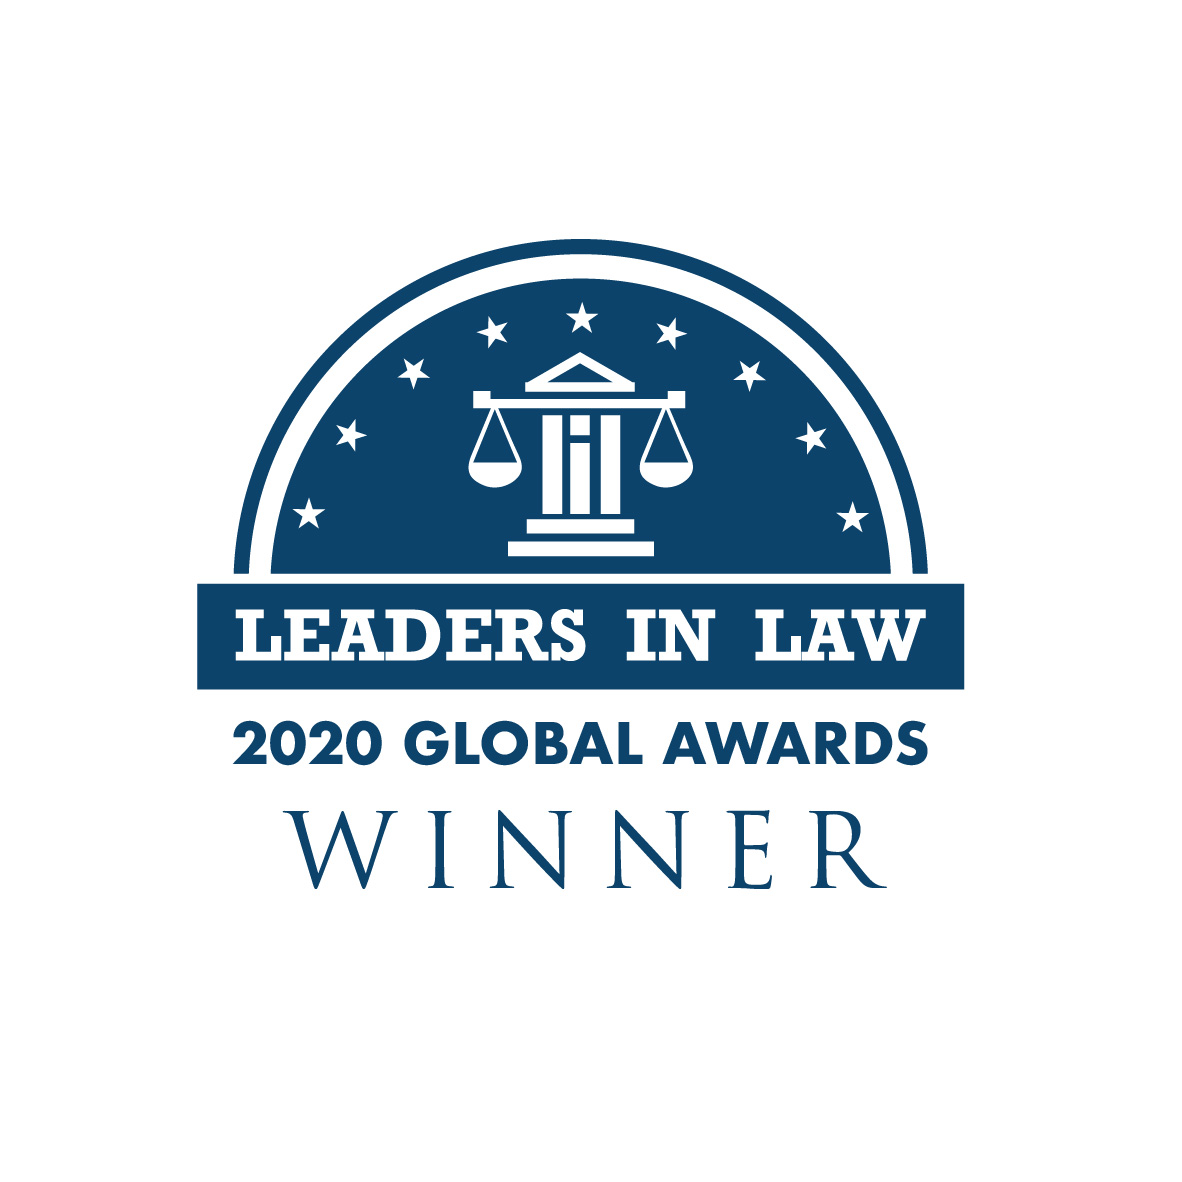 Leaders in Law - Global Awards Winner 2020